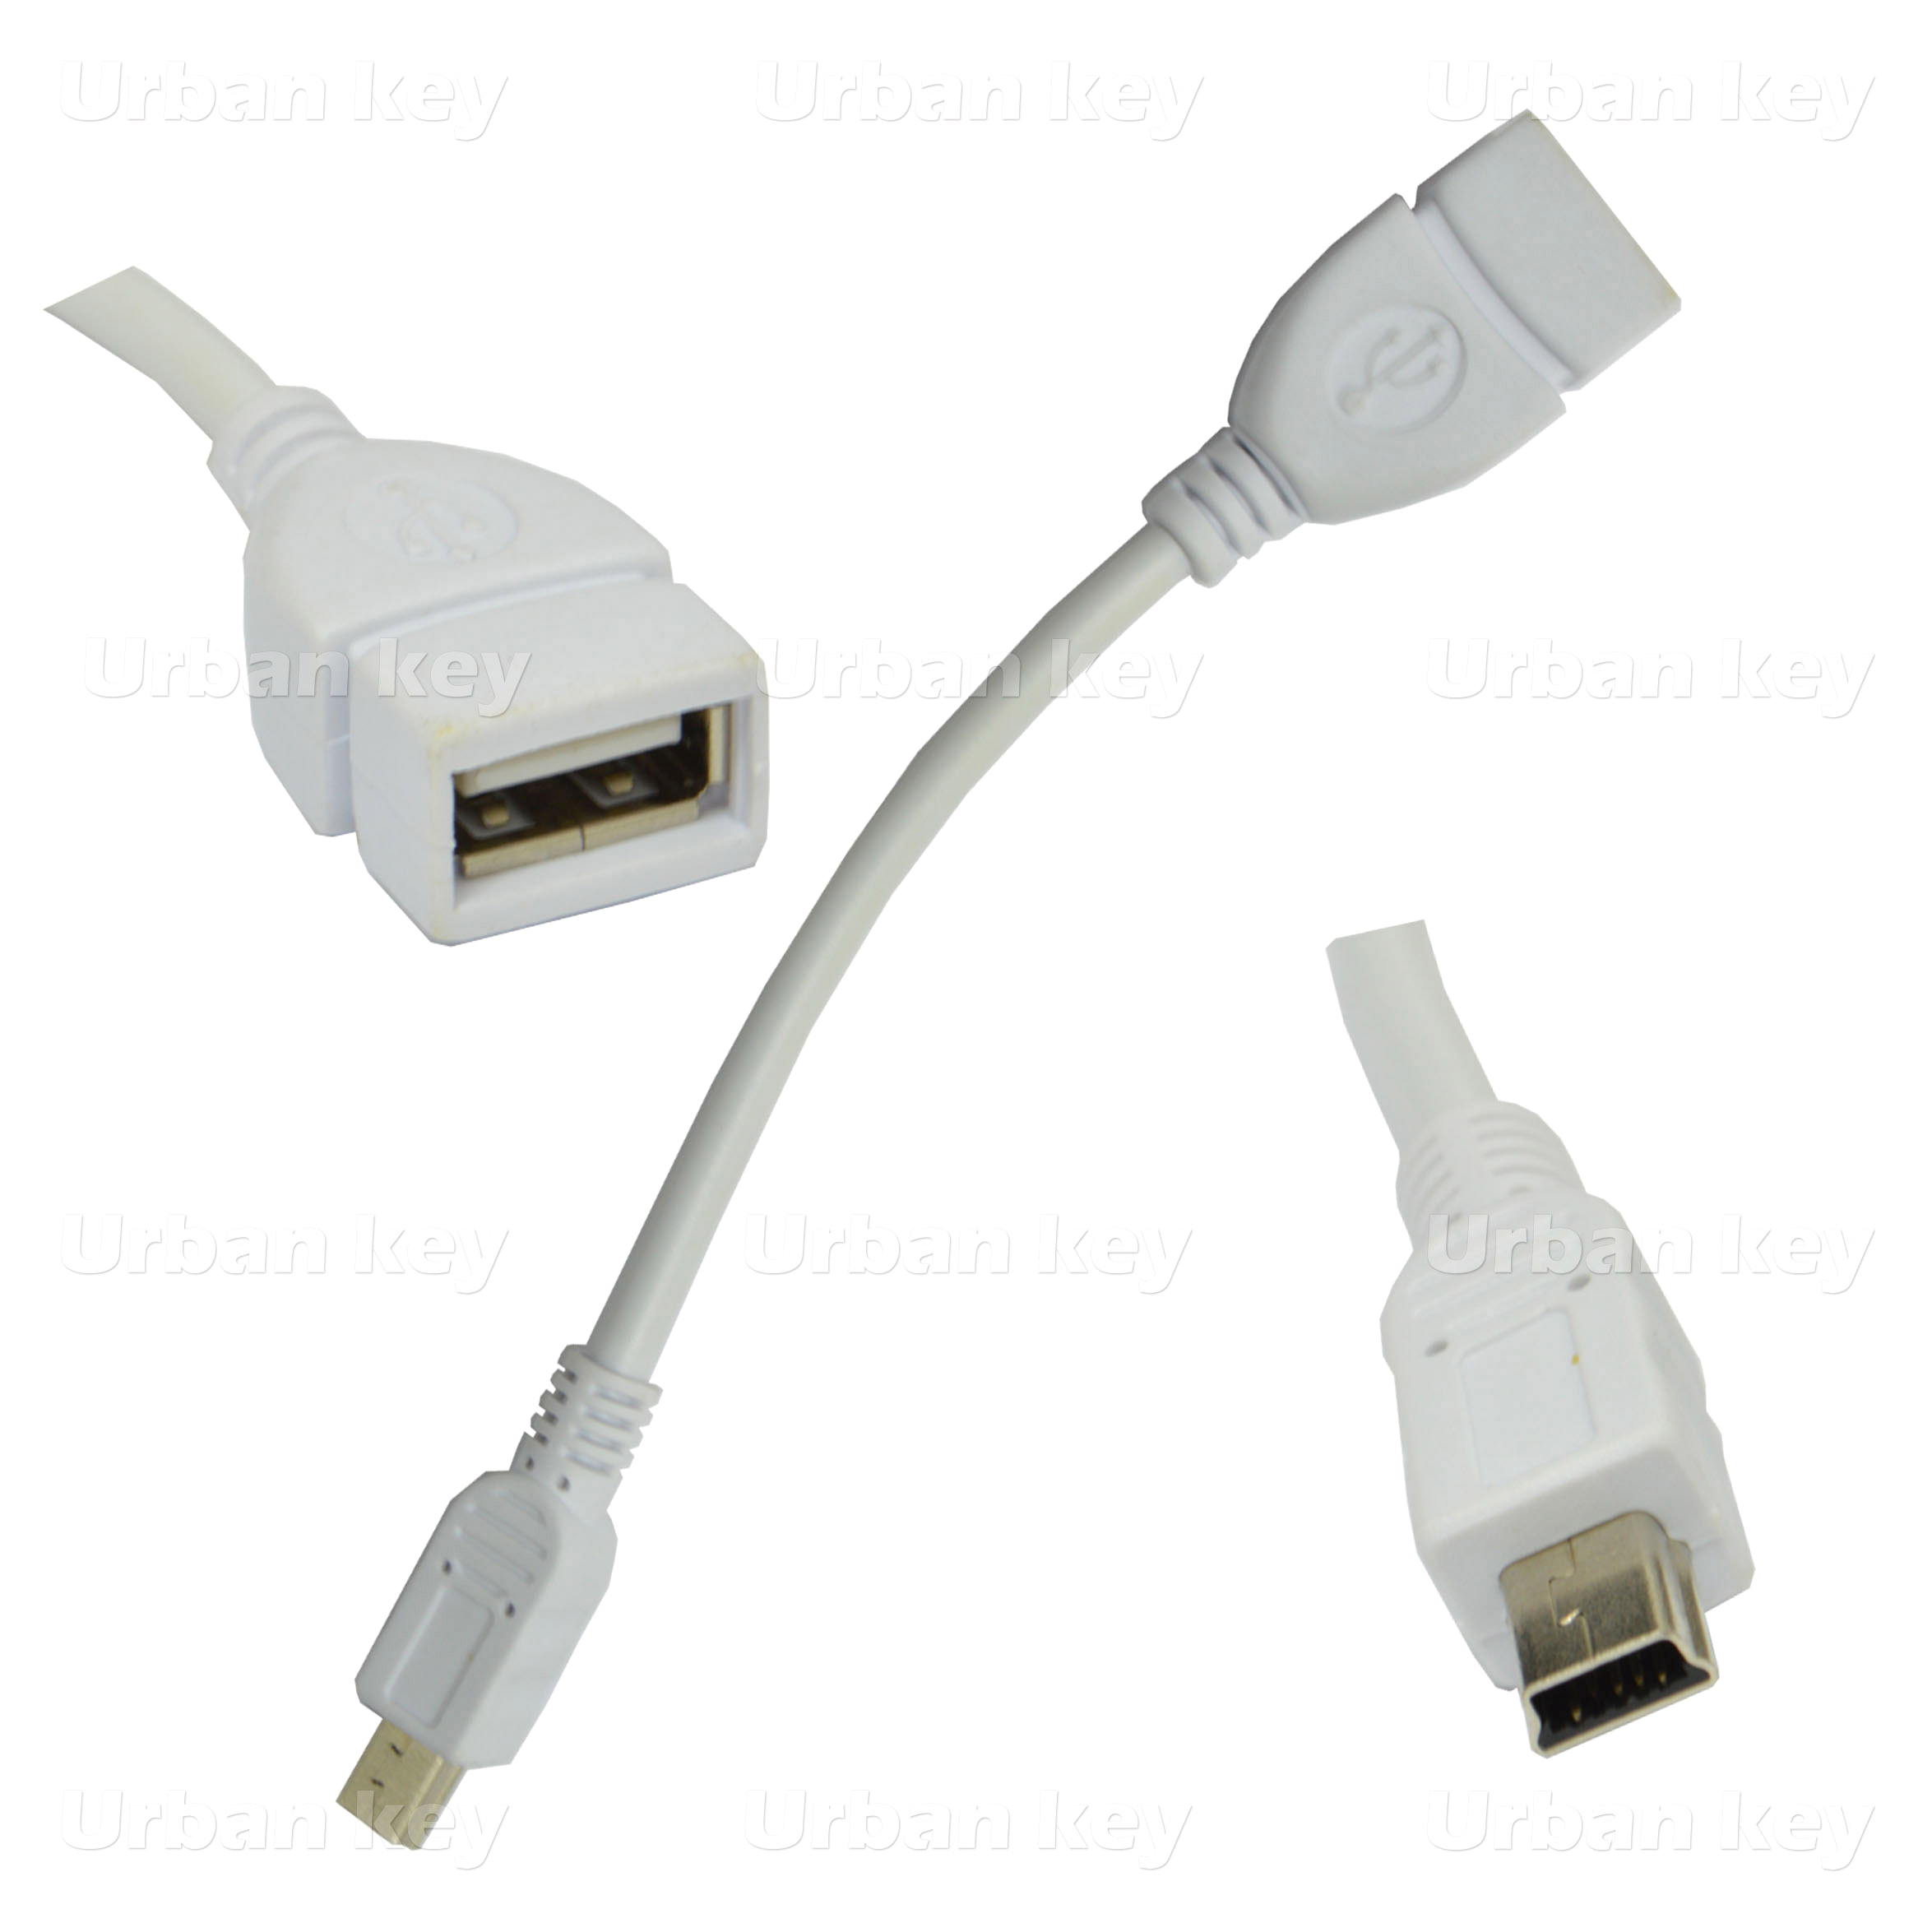 ADAPTADOR OTG MICRO USB / USB SMARTPHONES